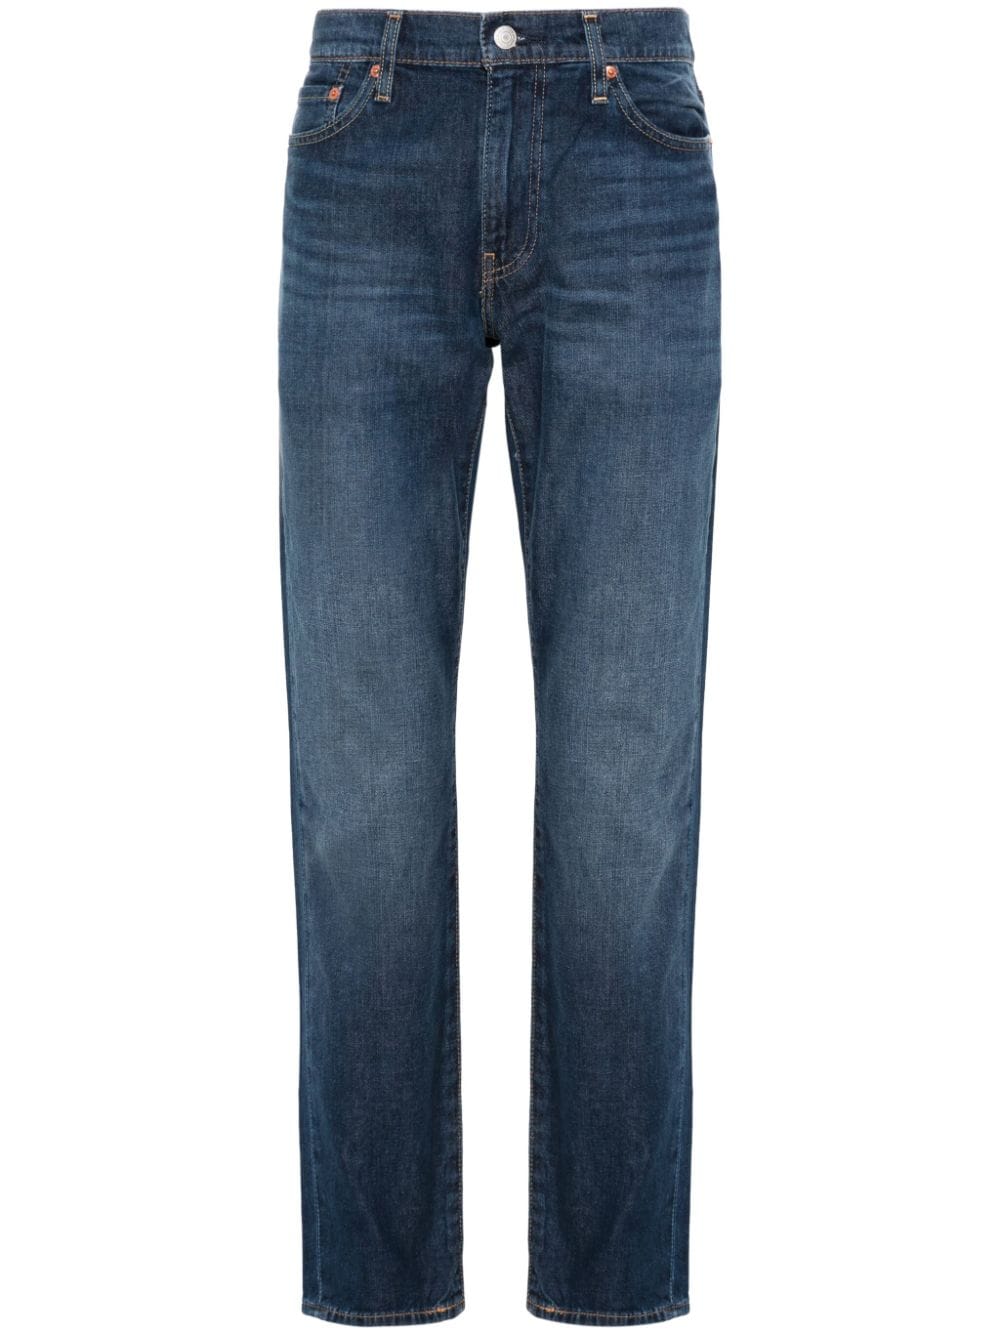 511 slim-cut jeans<BR/><BR/>